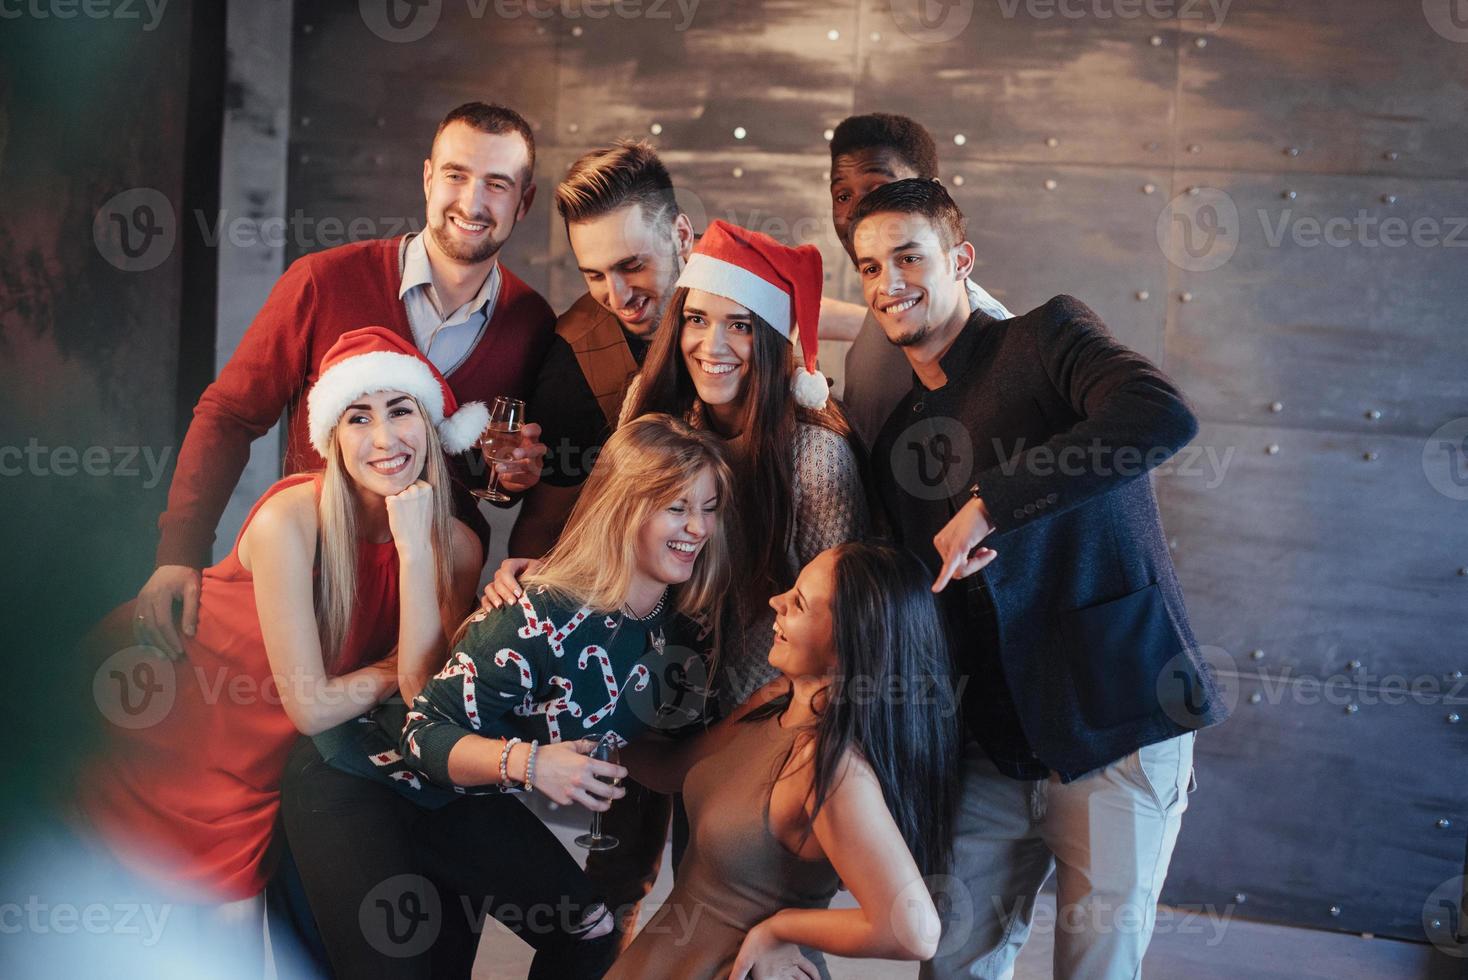 ano novo está chegando. grupo de jovens multiétnicos alegres com chapéu de Papai Noel na festa, posando de conceito de pessoas de estilo de vida emocional foto